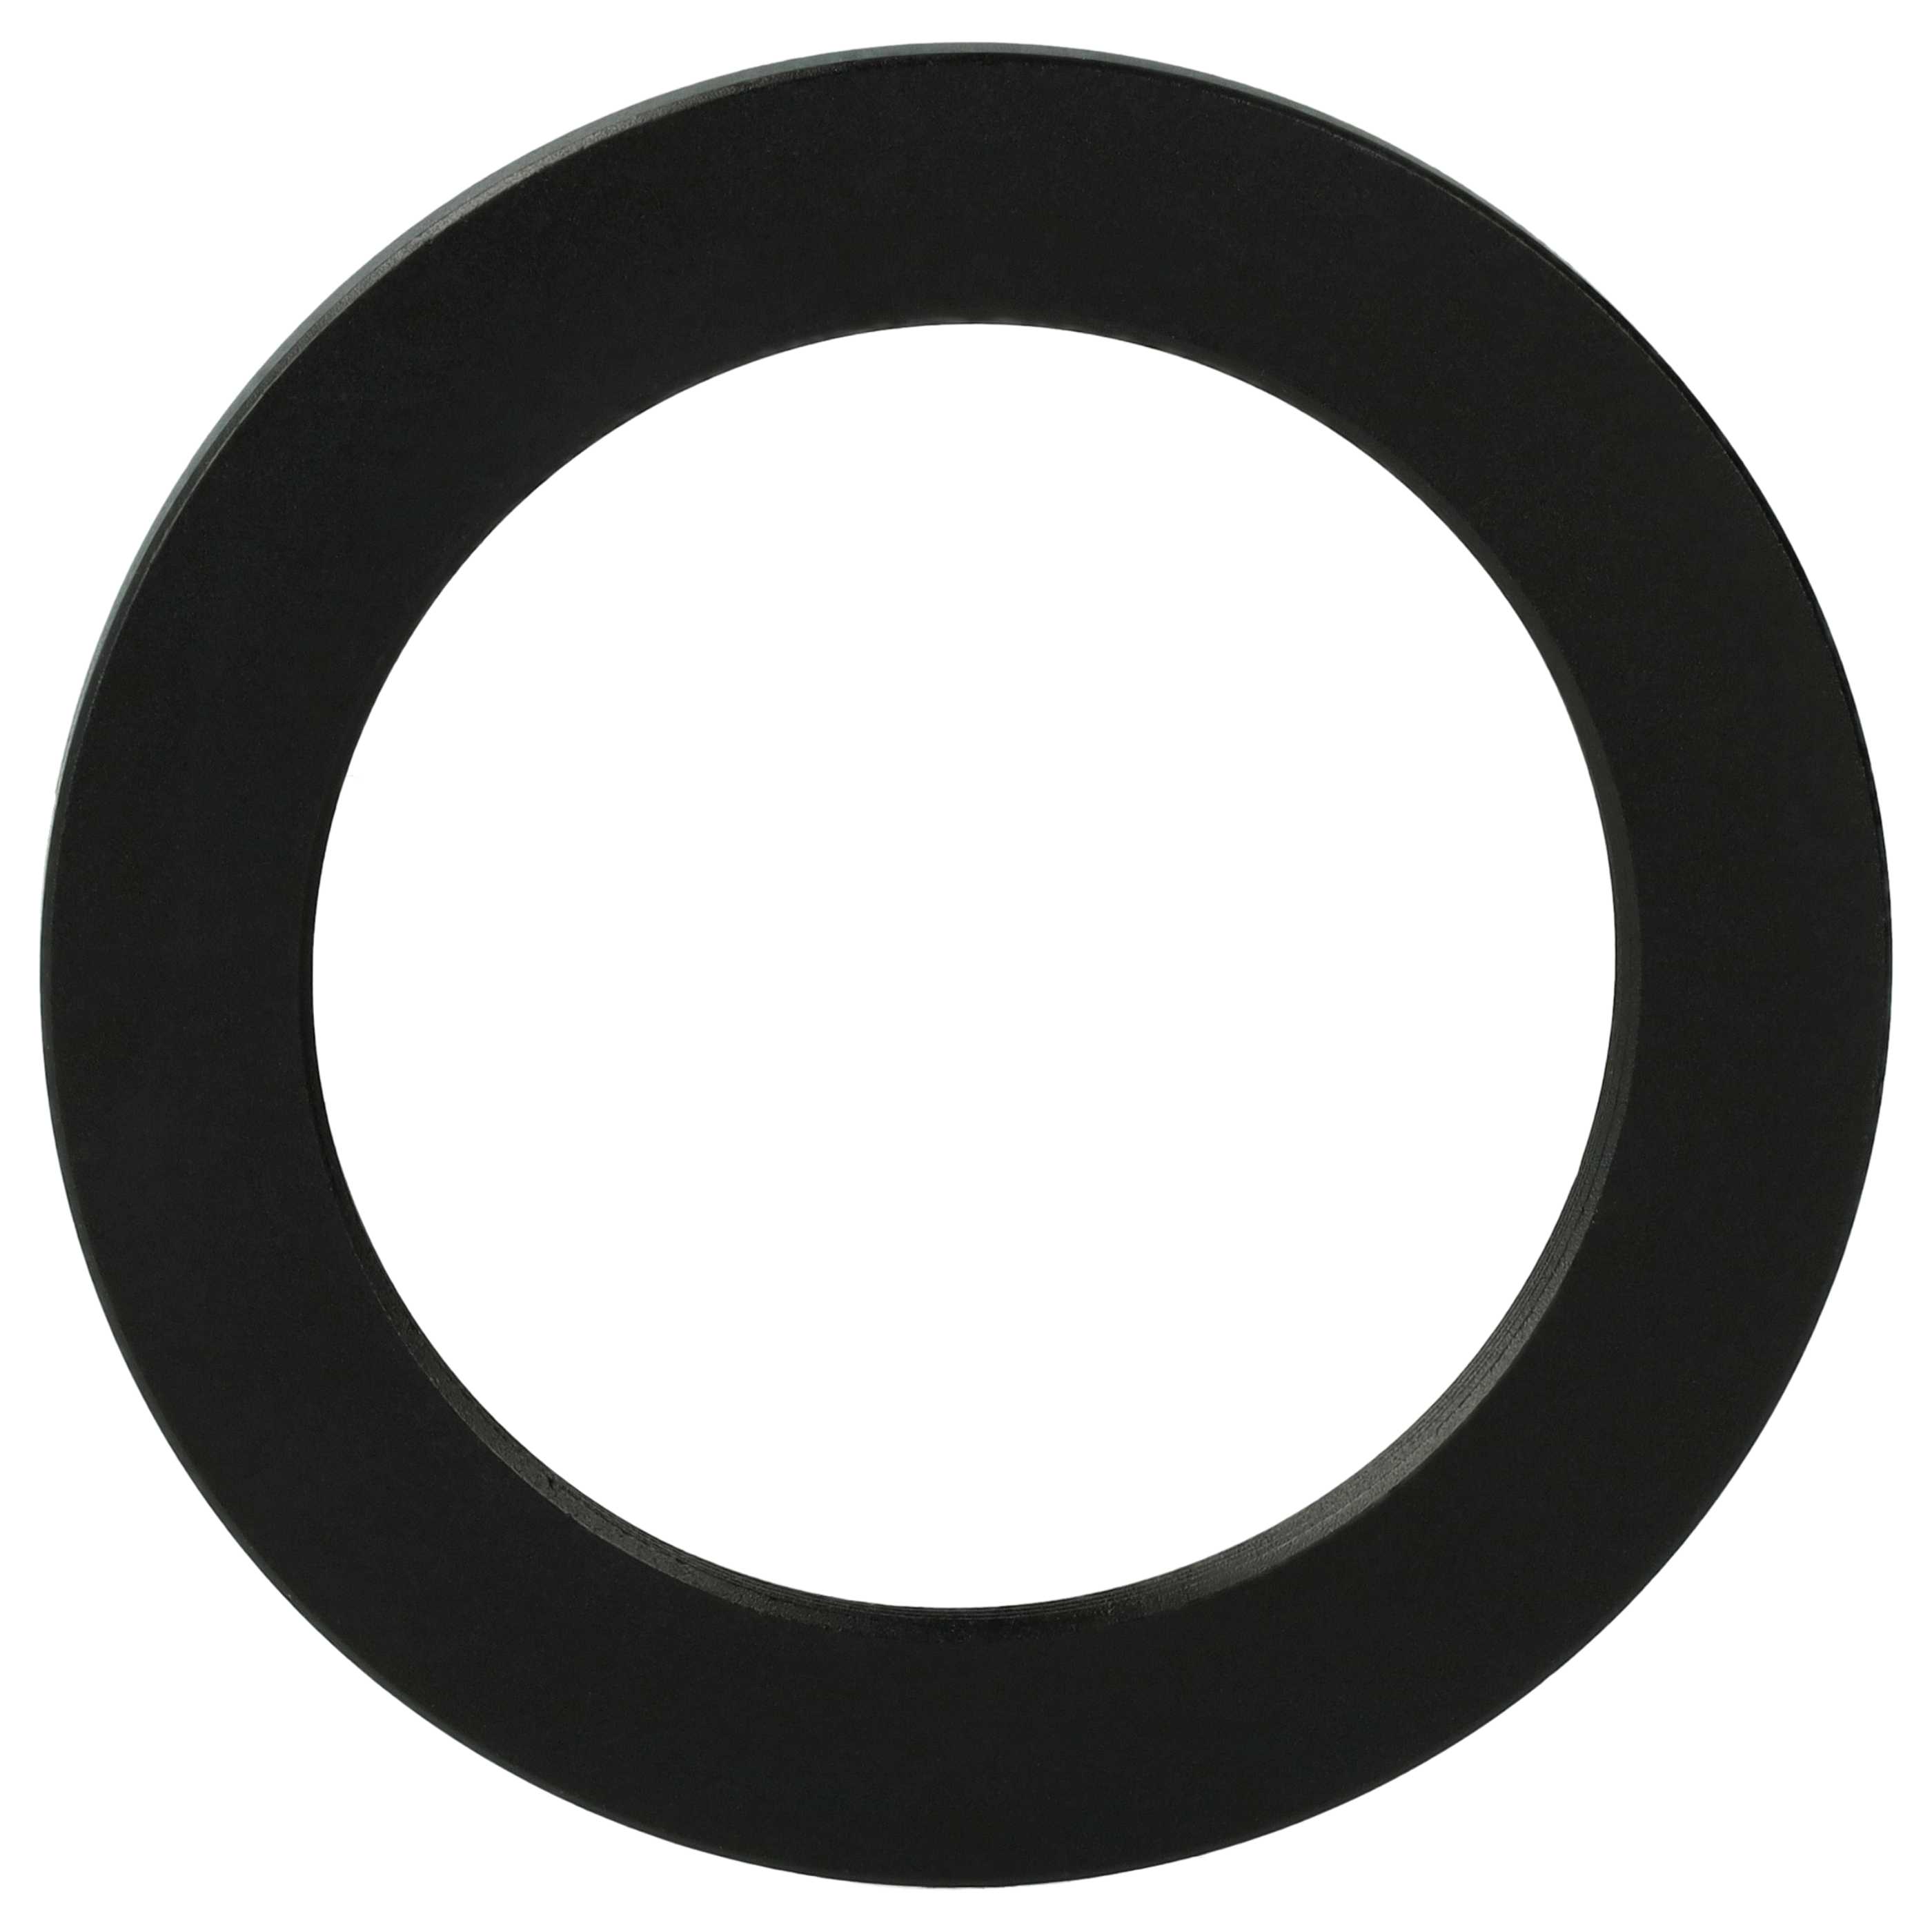 Anello adattatore step-down da 58 mm a 43 mm per obiettivo fotocamera - Adattatore filtro, metallo, nero